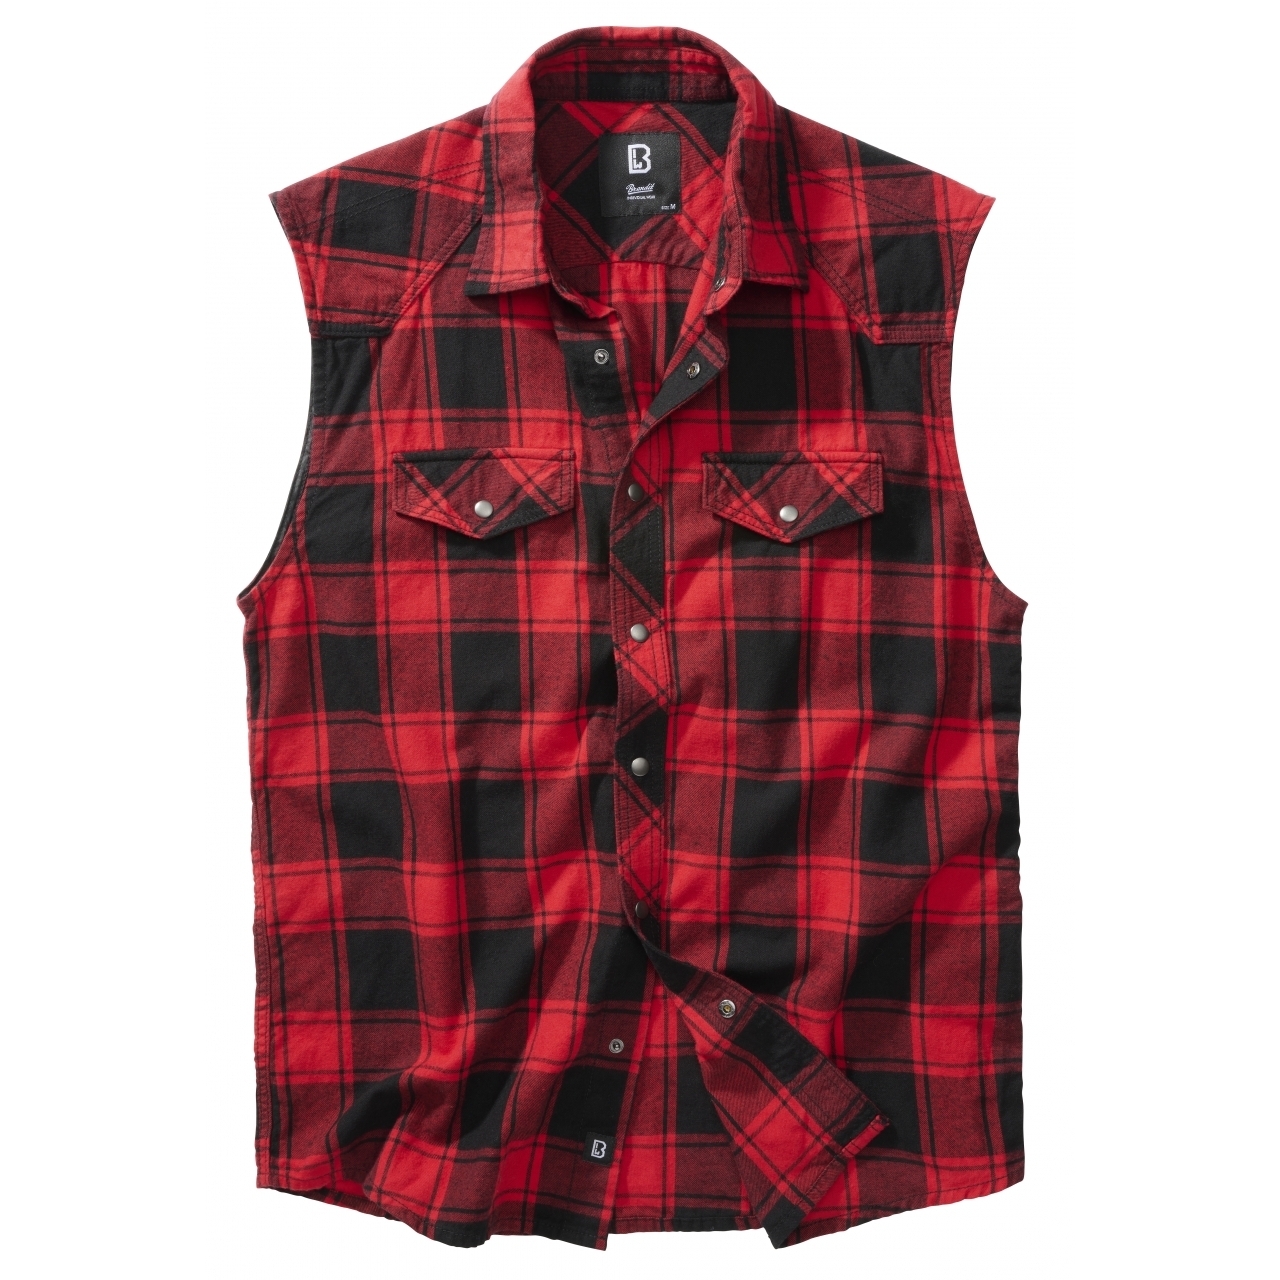 Košile Brandit Check Shirt Sleeveless - červená-černá, XL